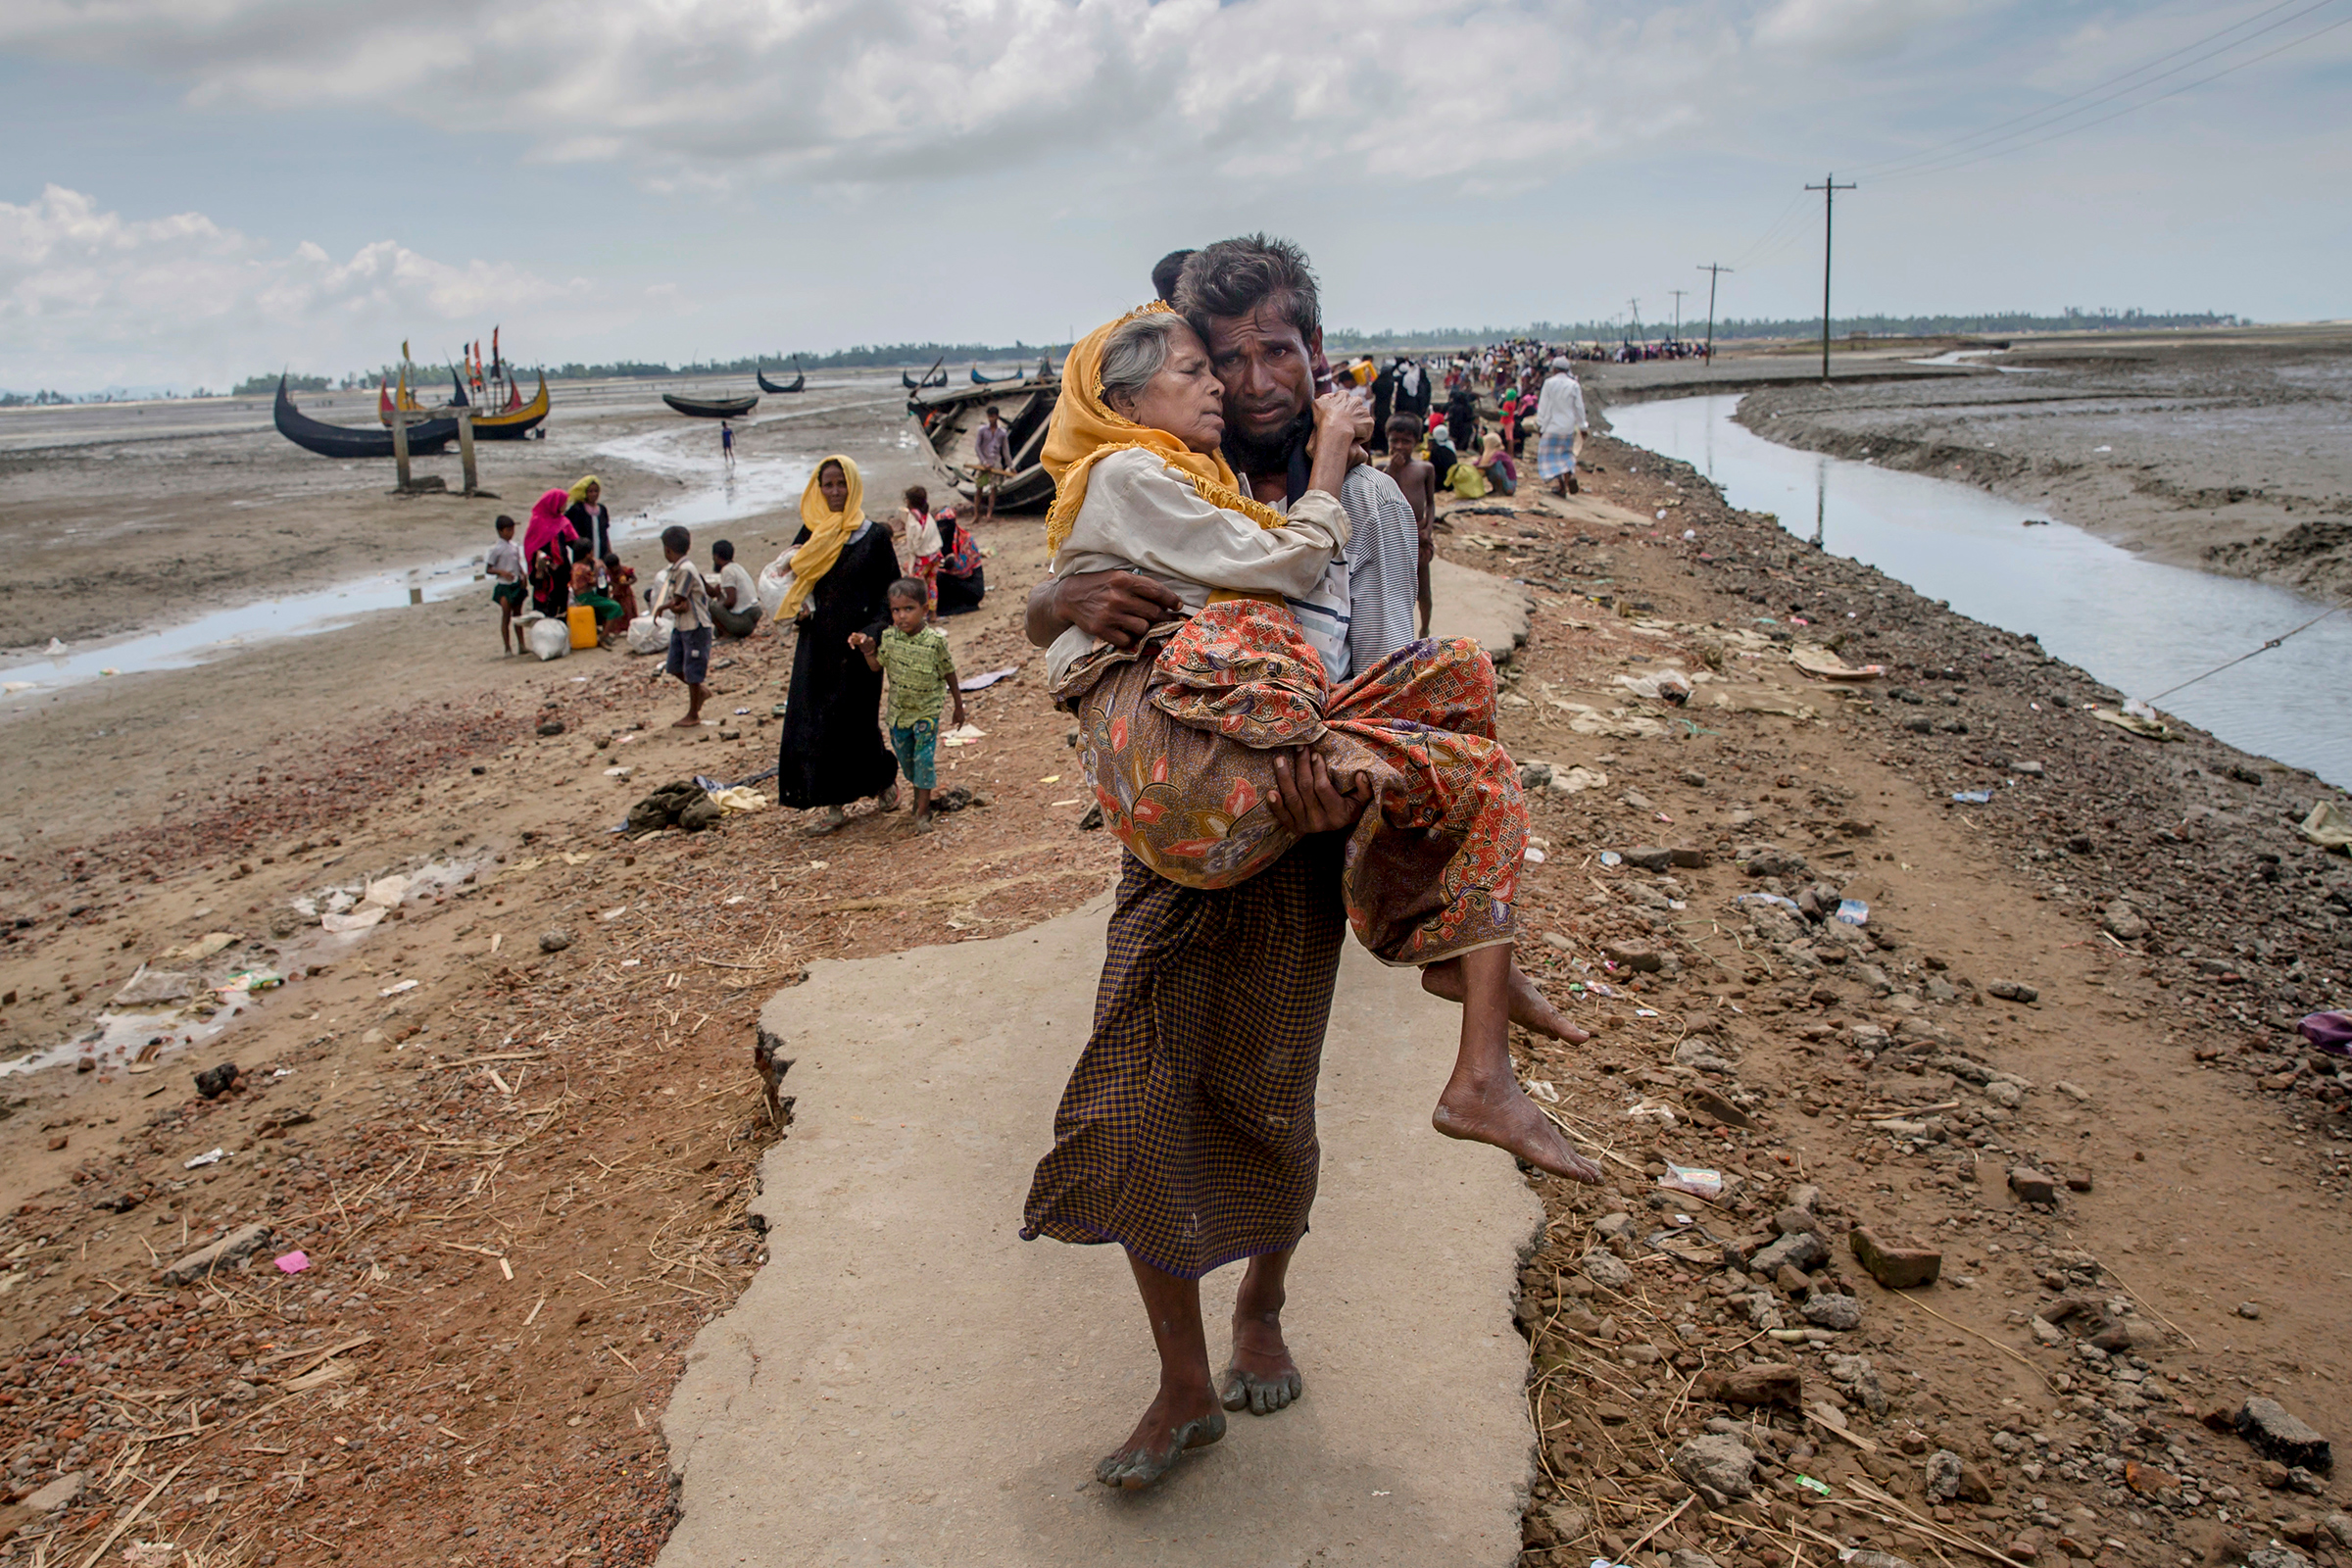 По данным ООН, к середине ноября 2017 года штат Ракхайн в Мьянме покинули 615 тыс. мусульман-рохинджа. Сами они считают себя коренным населением этой территории, а местные власти&nbsp;уже десятки лет называют рохинджа нелегальными мигрантами и пособниками террористов. В 2017 году конфликт обострился. Власти Мьянмы начали репрессии против рохинджа. Международные правозащитные организации говорят о геноциде.